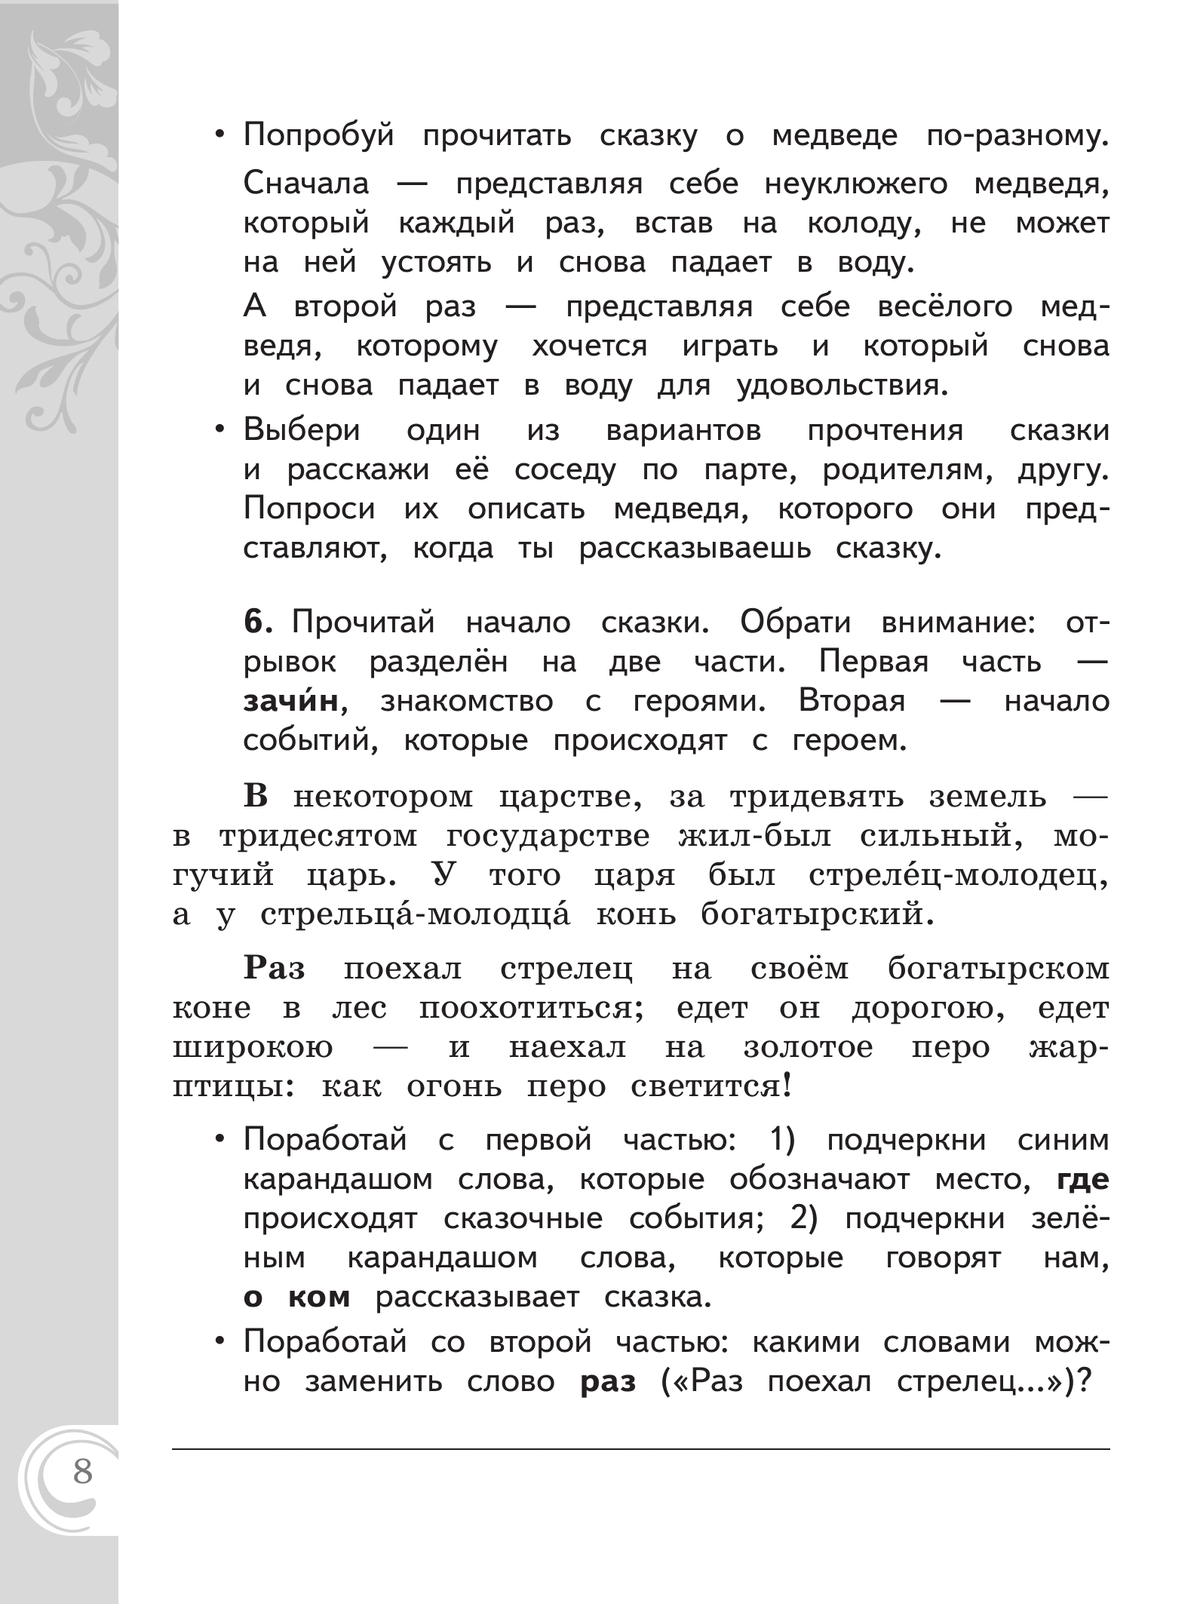 Литературное чтение на русском родном языке. 2 класс. Практикум 2